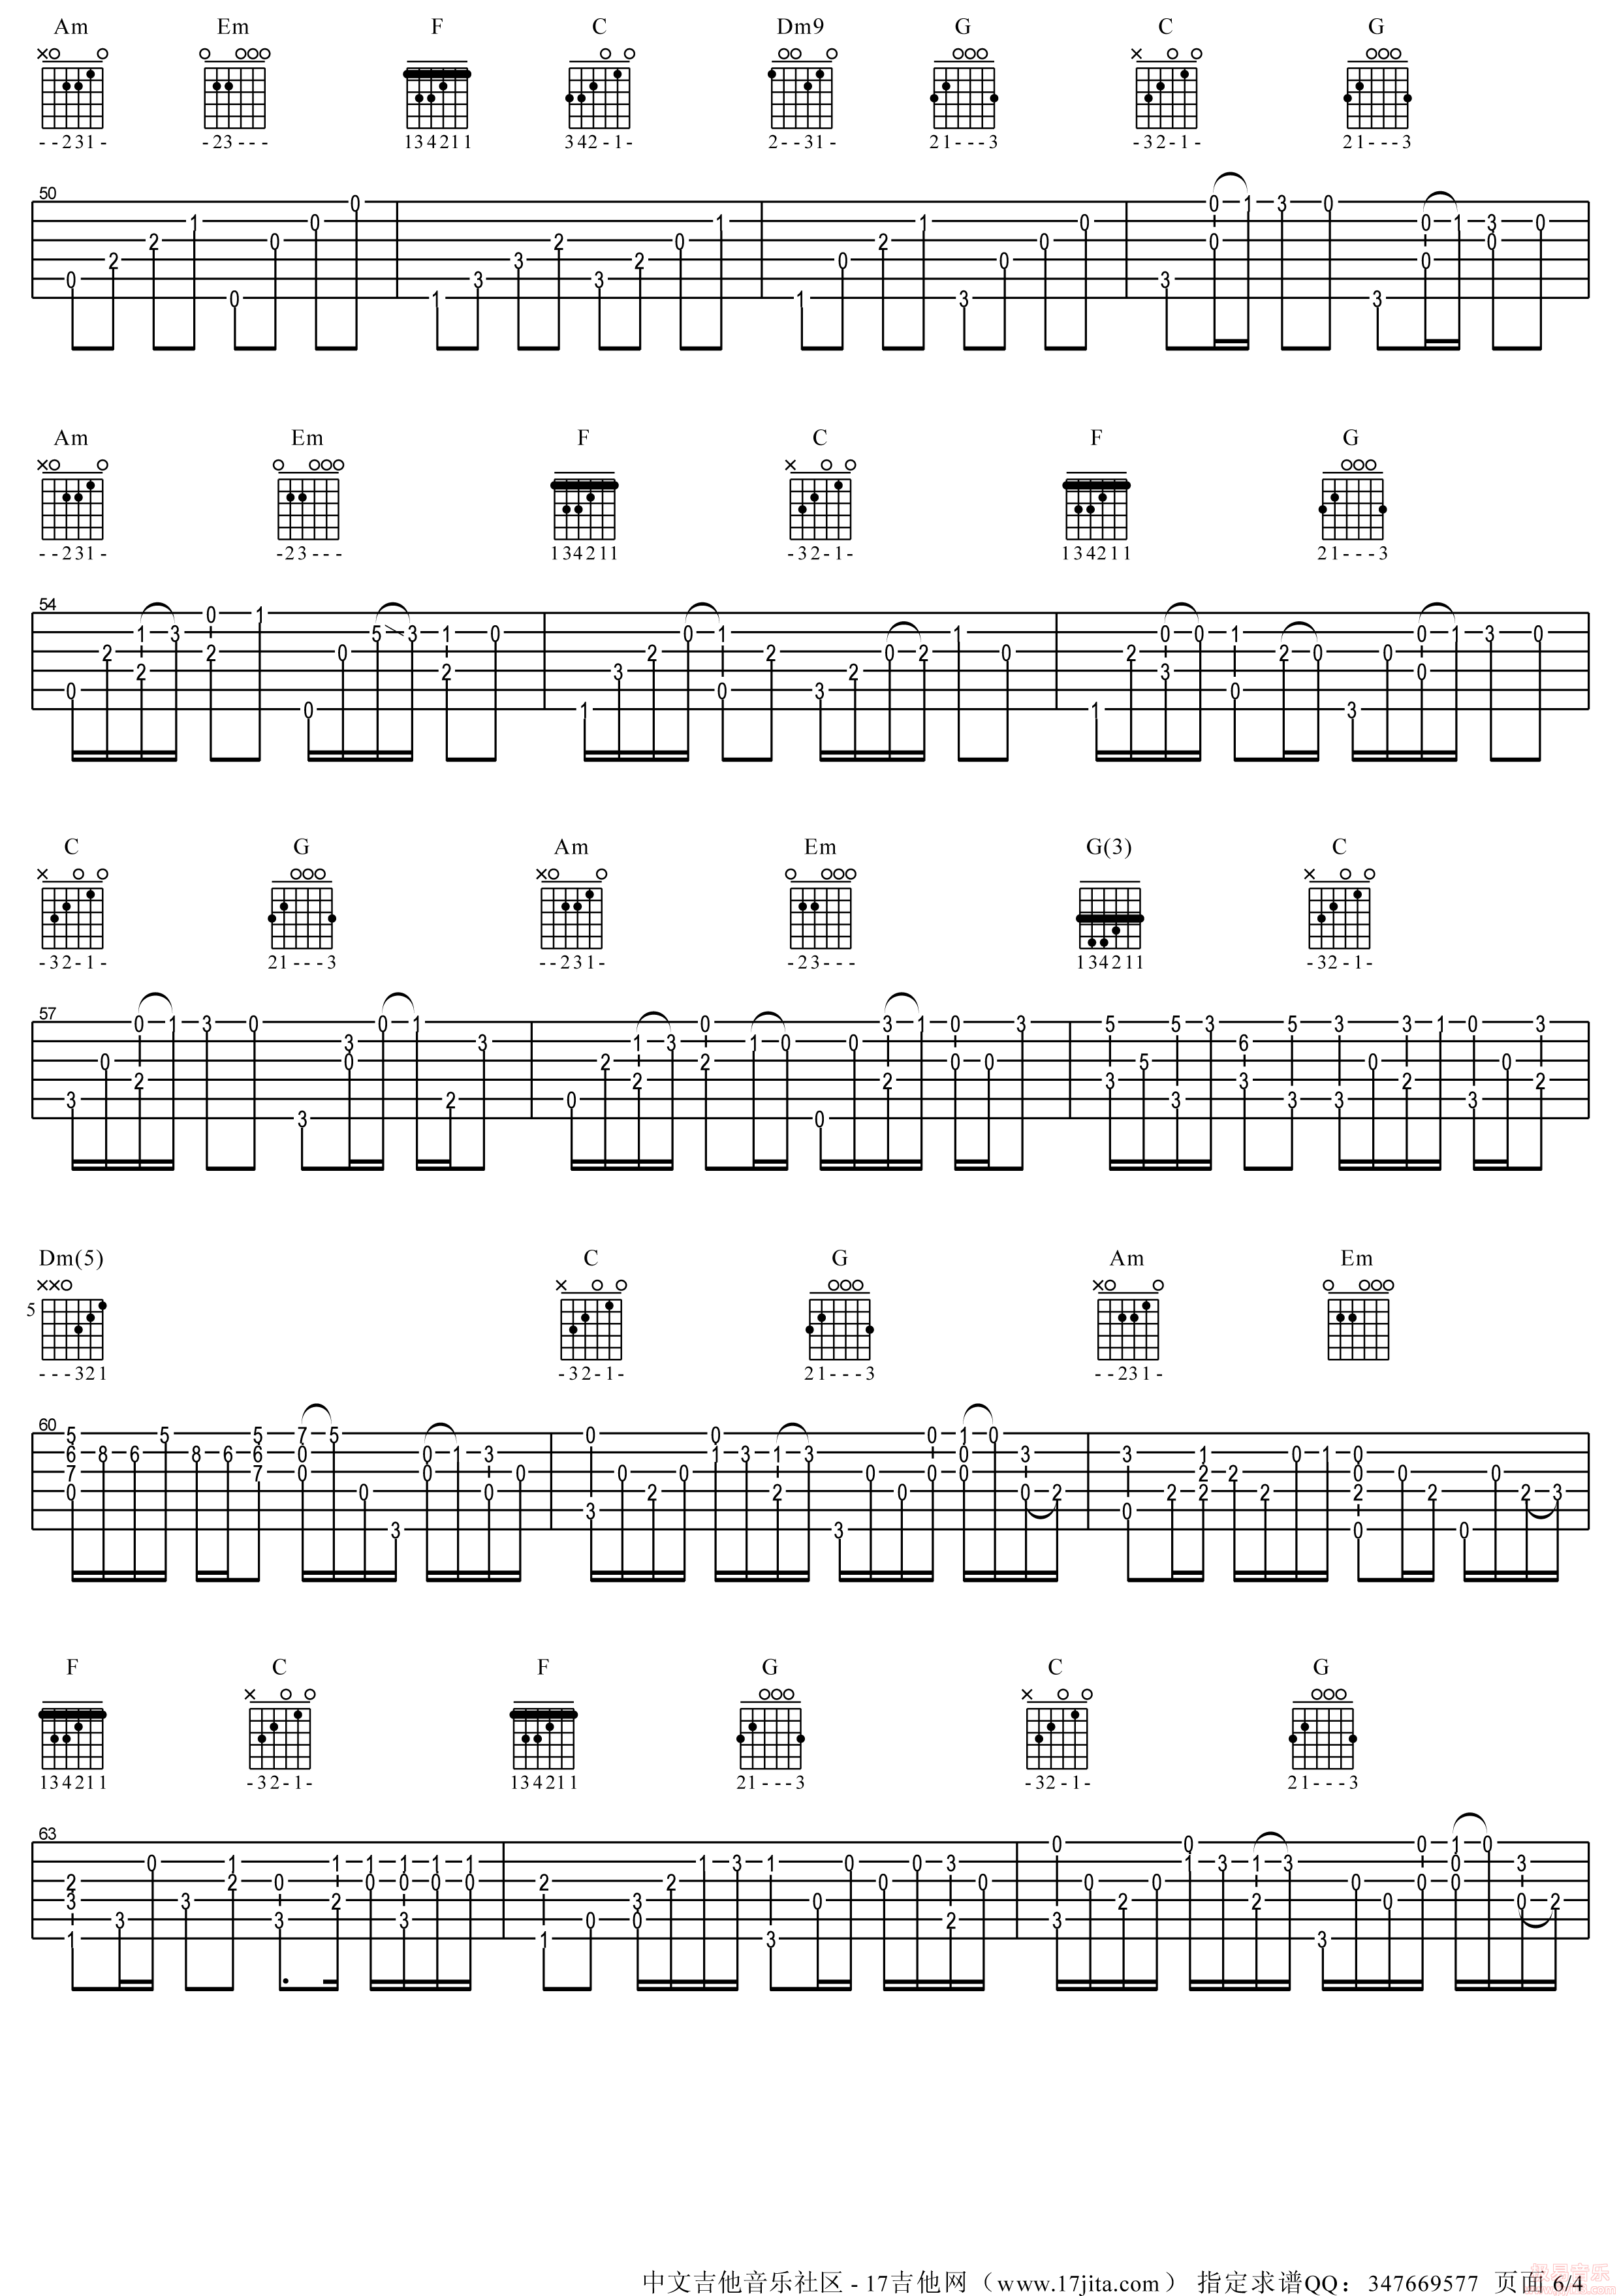 卢家宏吉他谱【十年】指弹版-吉他曲谱 - 乐器学习网